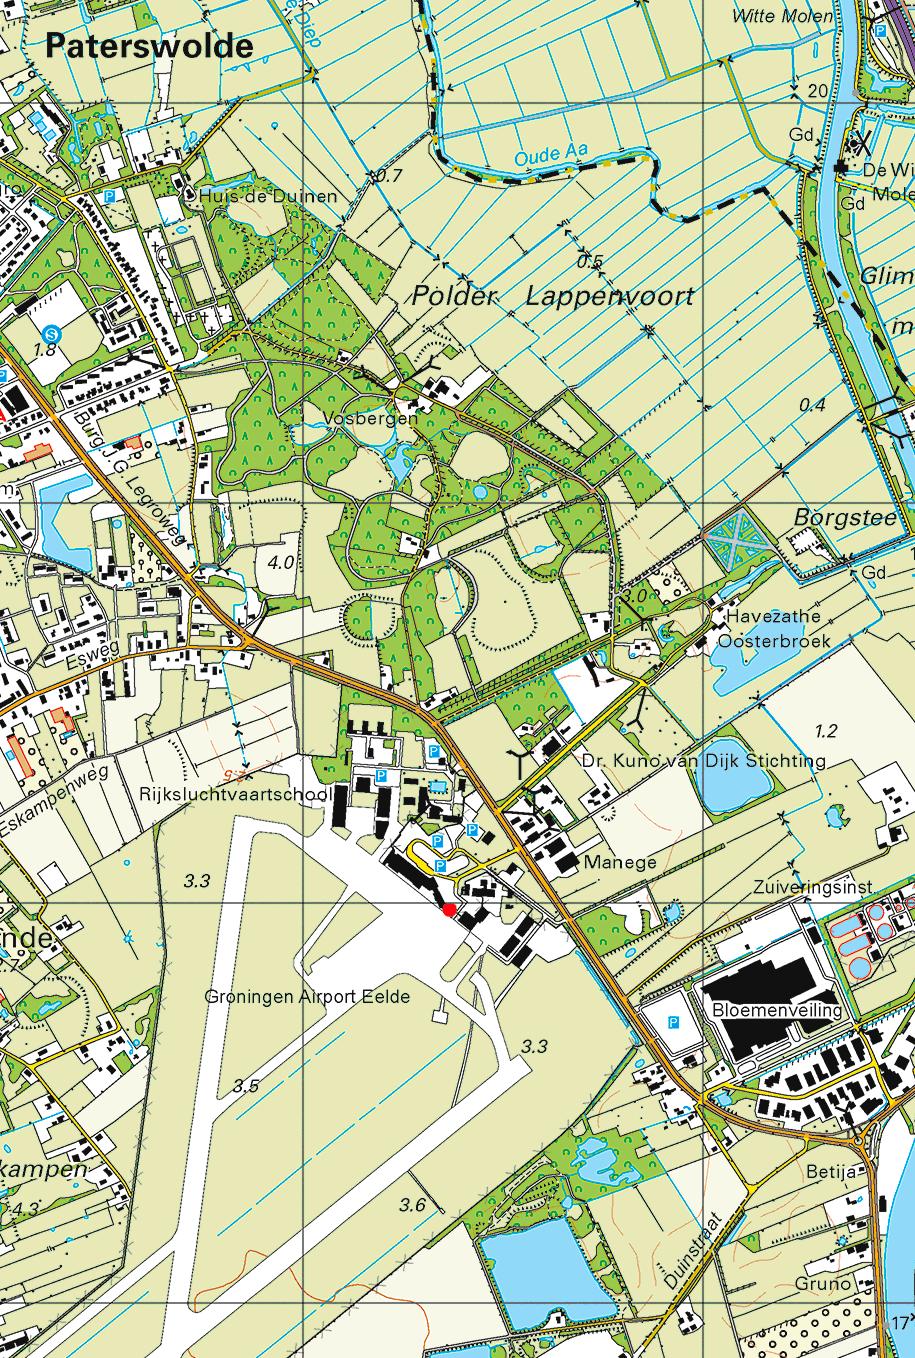 Route Lemferdinge 2 1 3 4 5 14 13 12 6 7 9 8 11 10 BRT